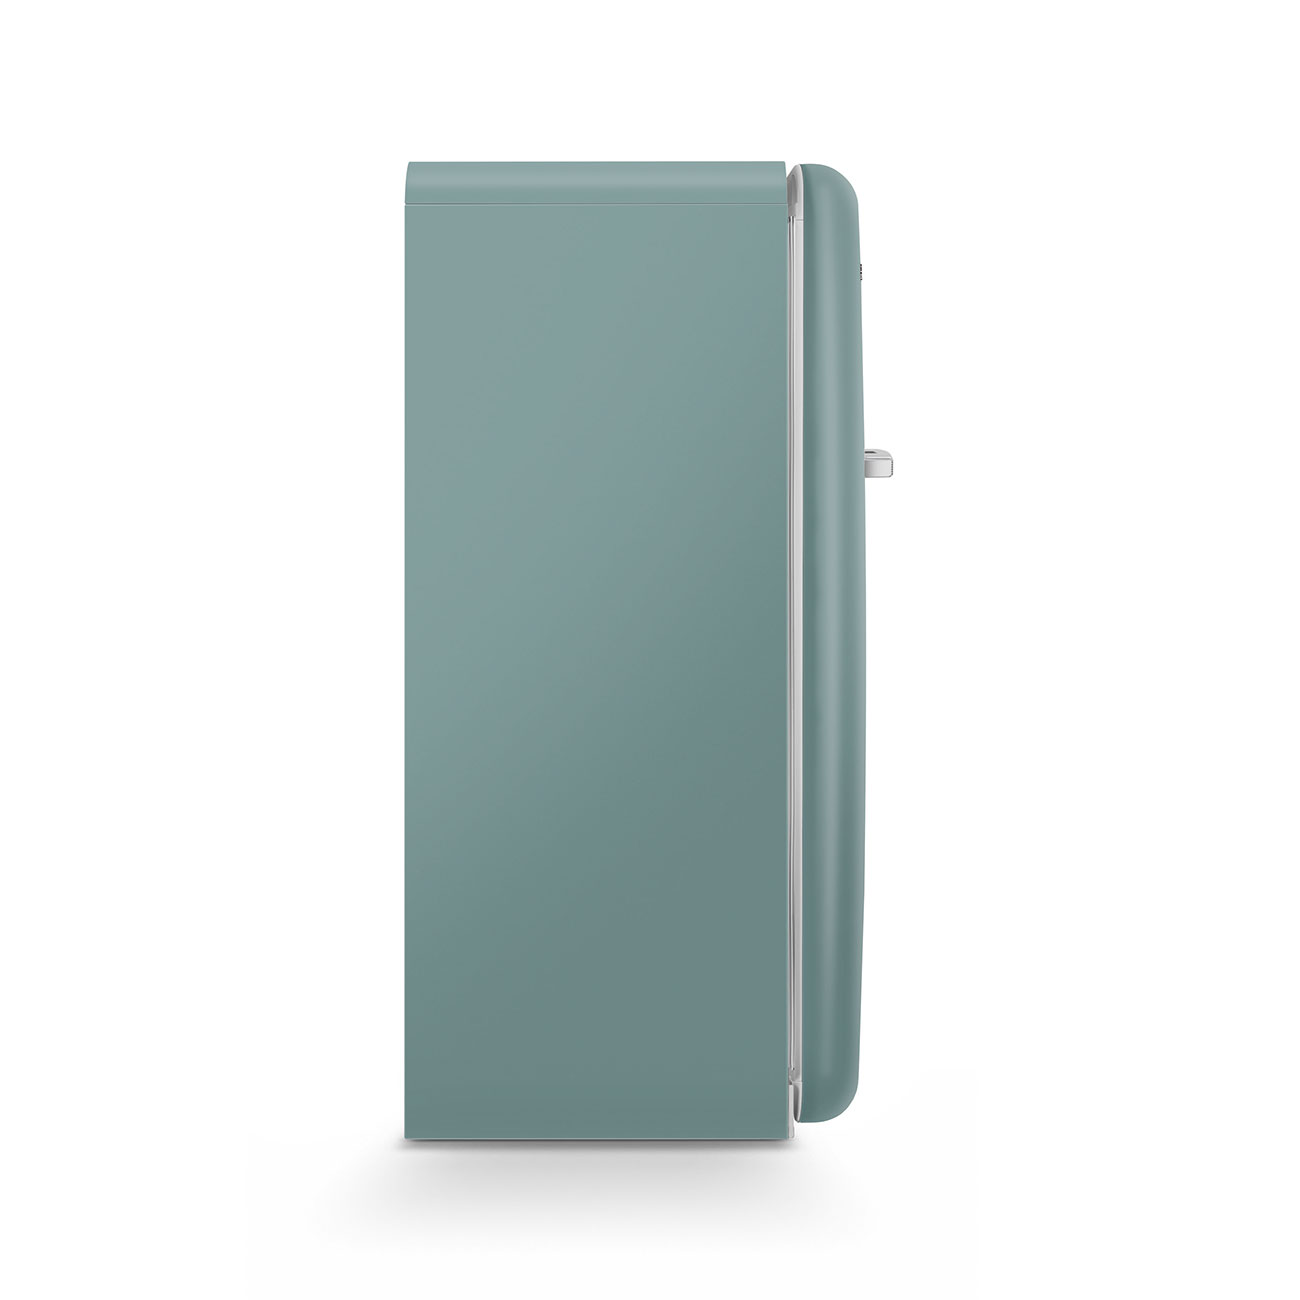 Emerald Green refrigerator - Smeg_8